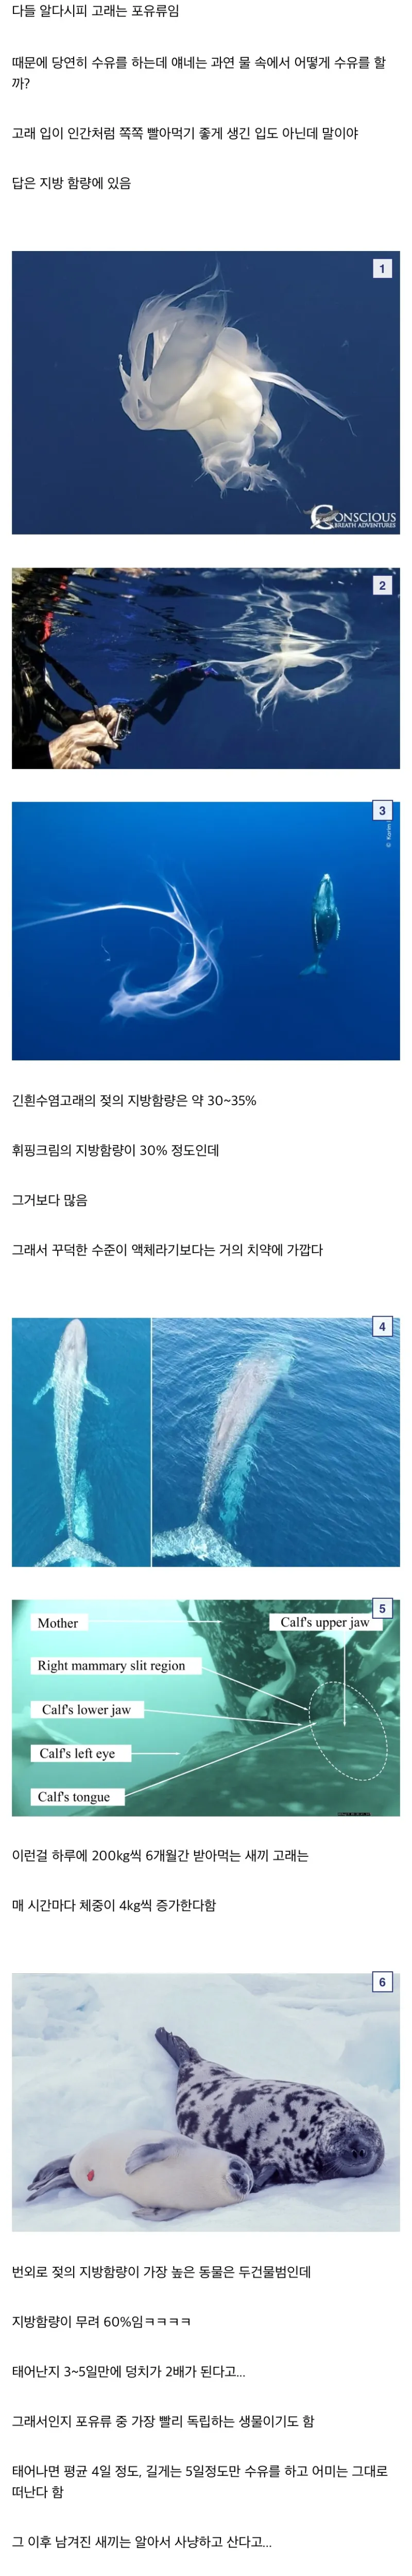 바다에서 수유를 하는 고래 젖과 세상에서 가장 진한 젖